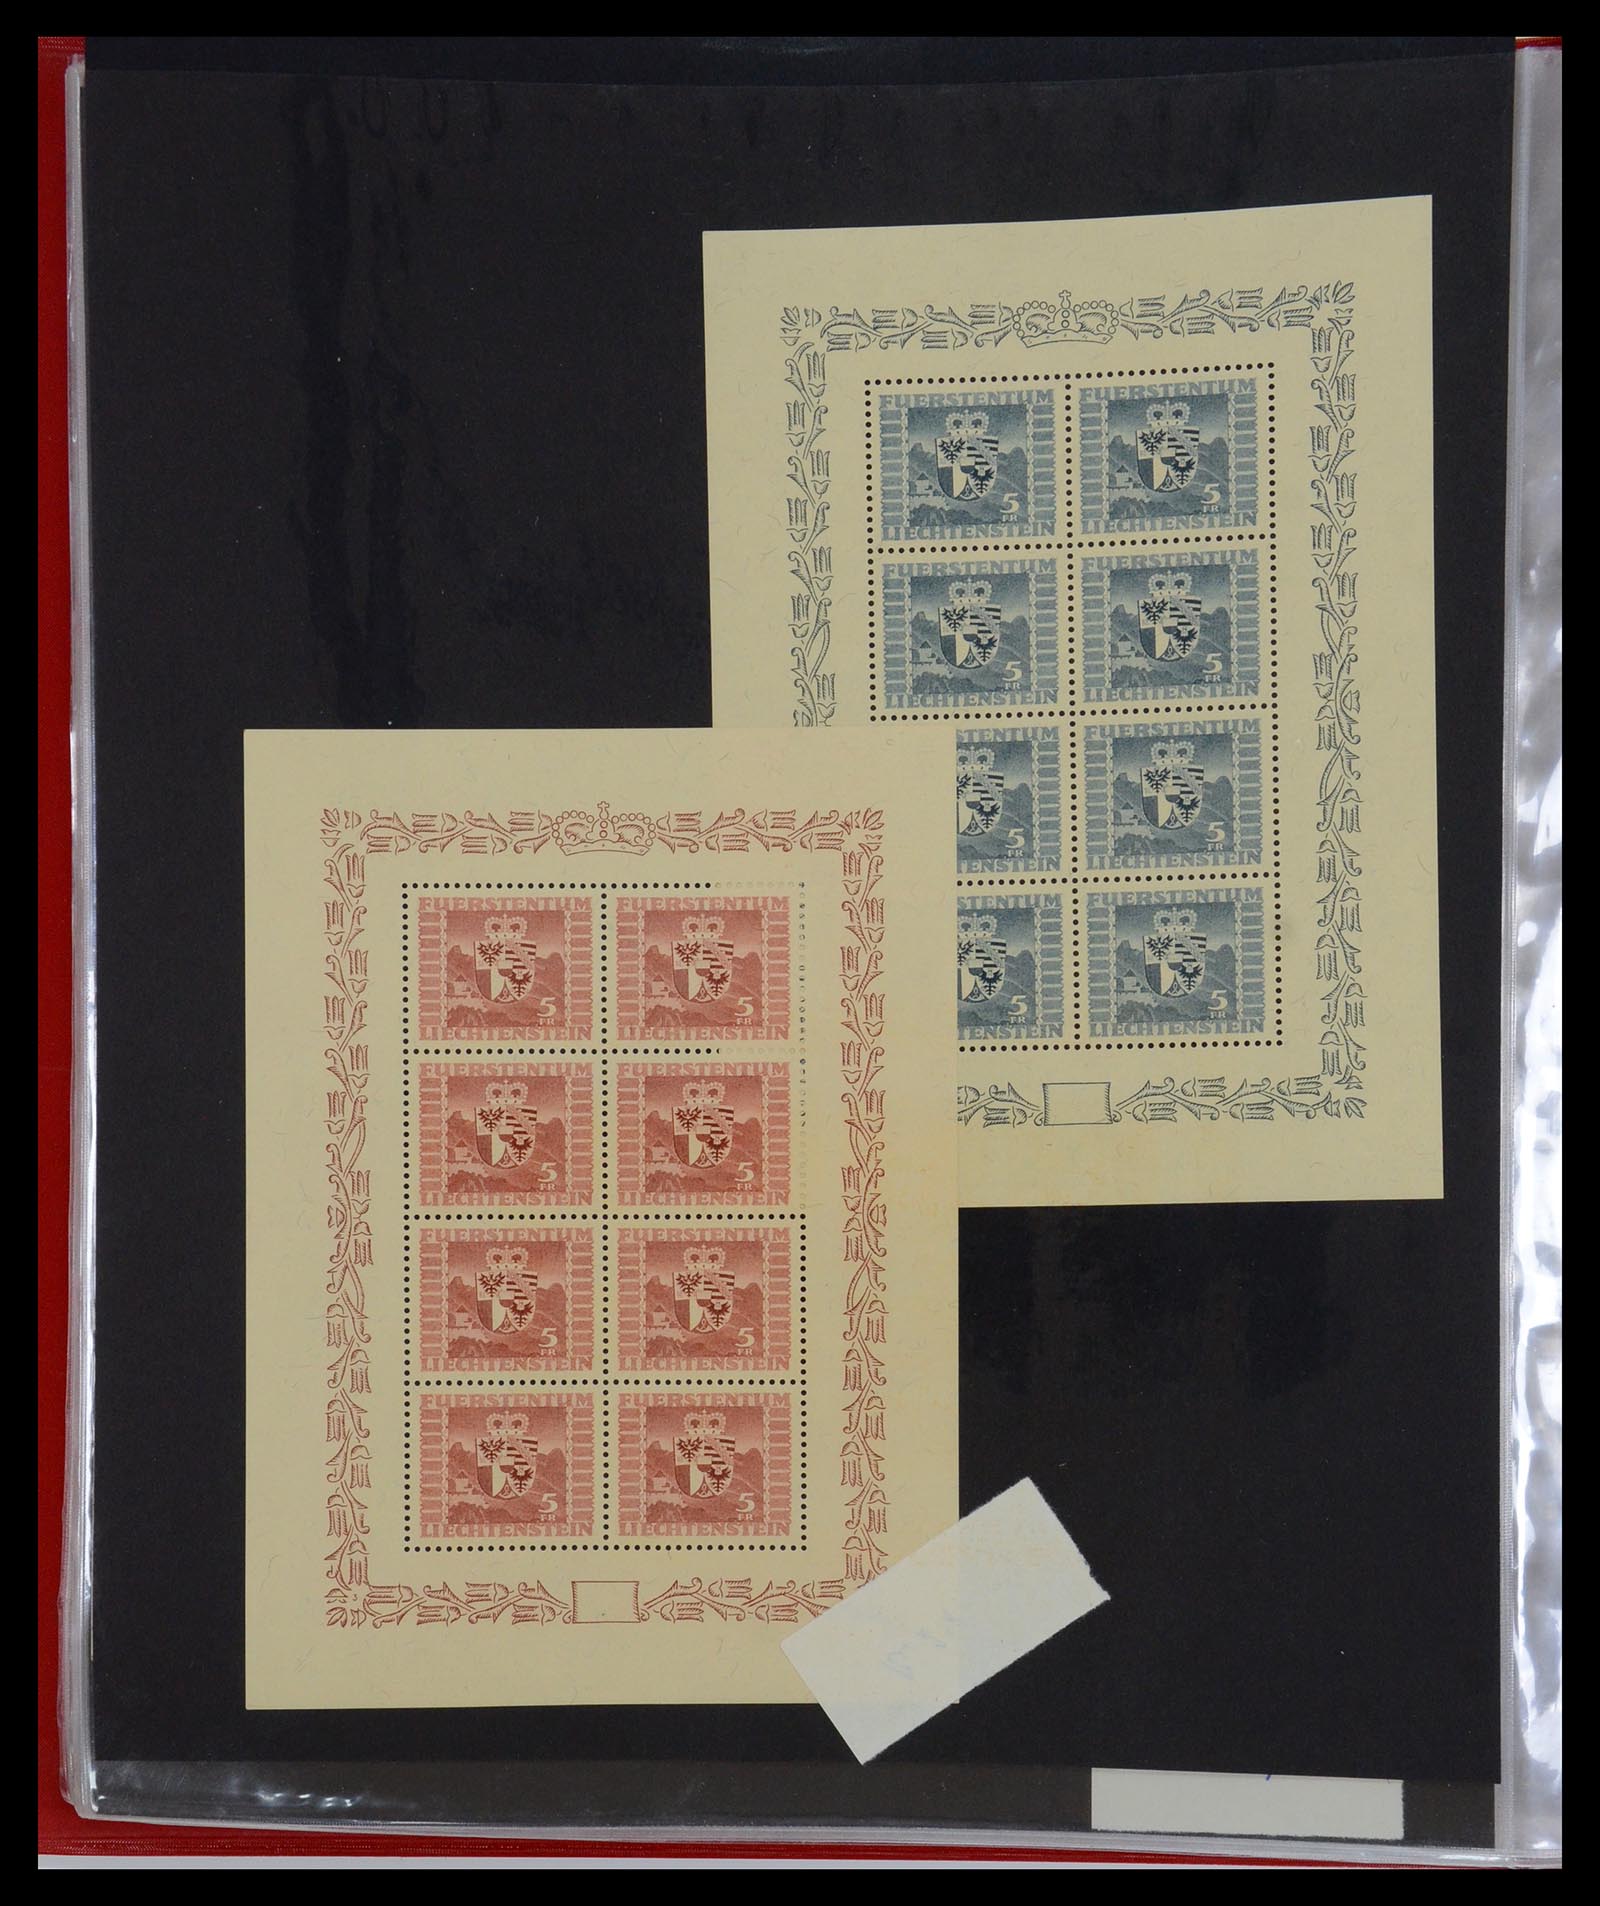 36280 038 - Stamp collection 36280 Liechtenstein souvenir sheets and sheetlets 1934-